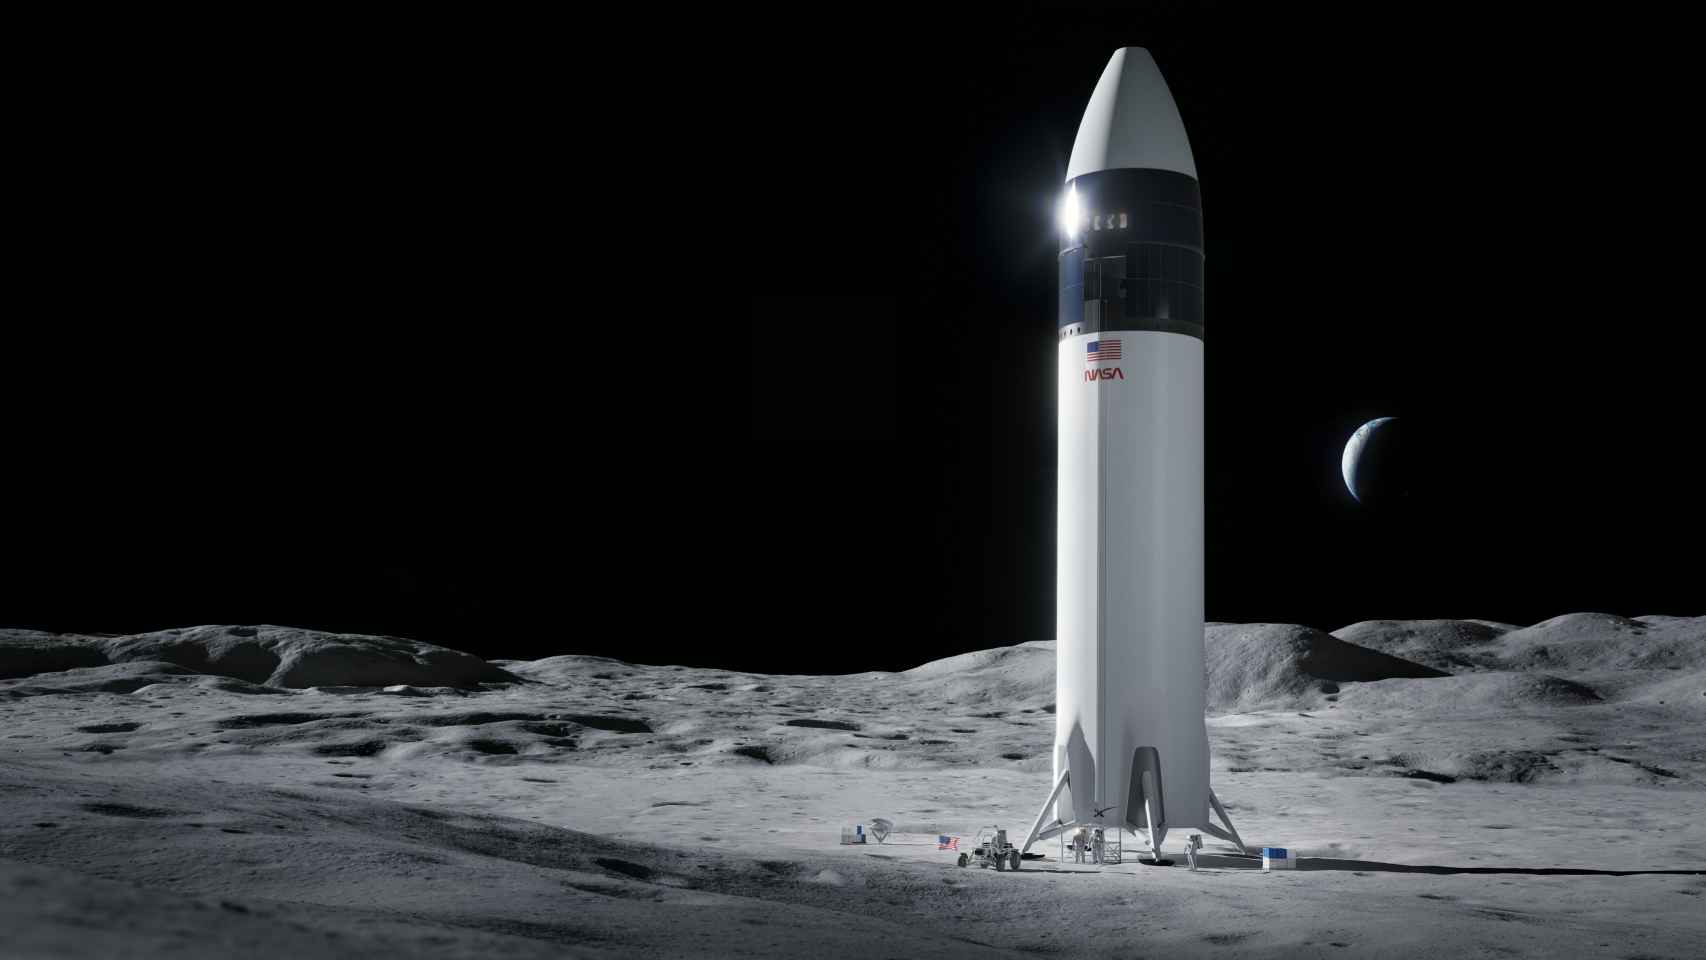 Confirmado: La NASA adjudica a Elon Musk el contrato para volver a la Luna en 2024